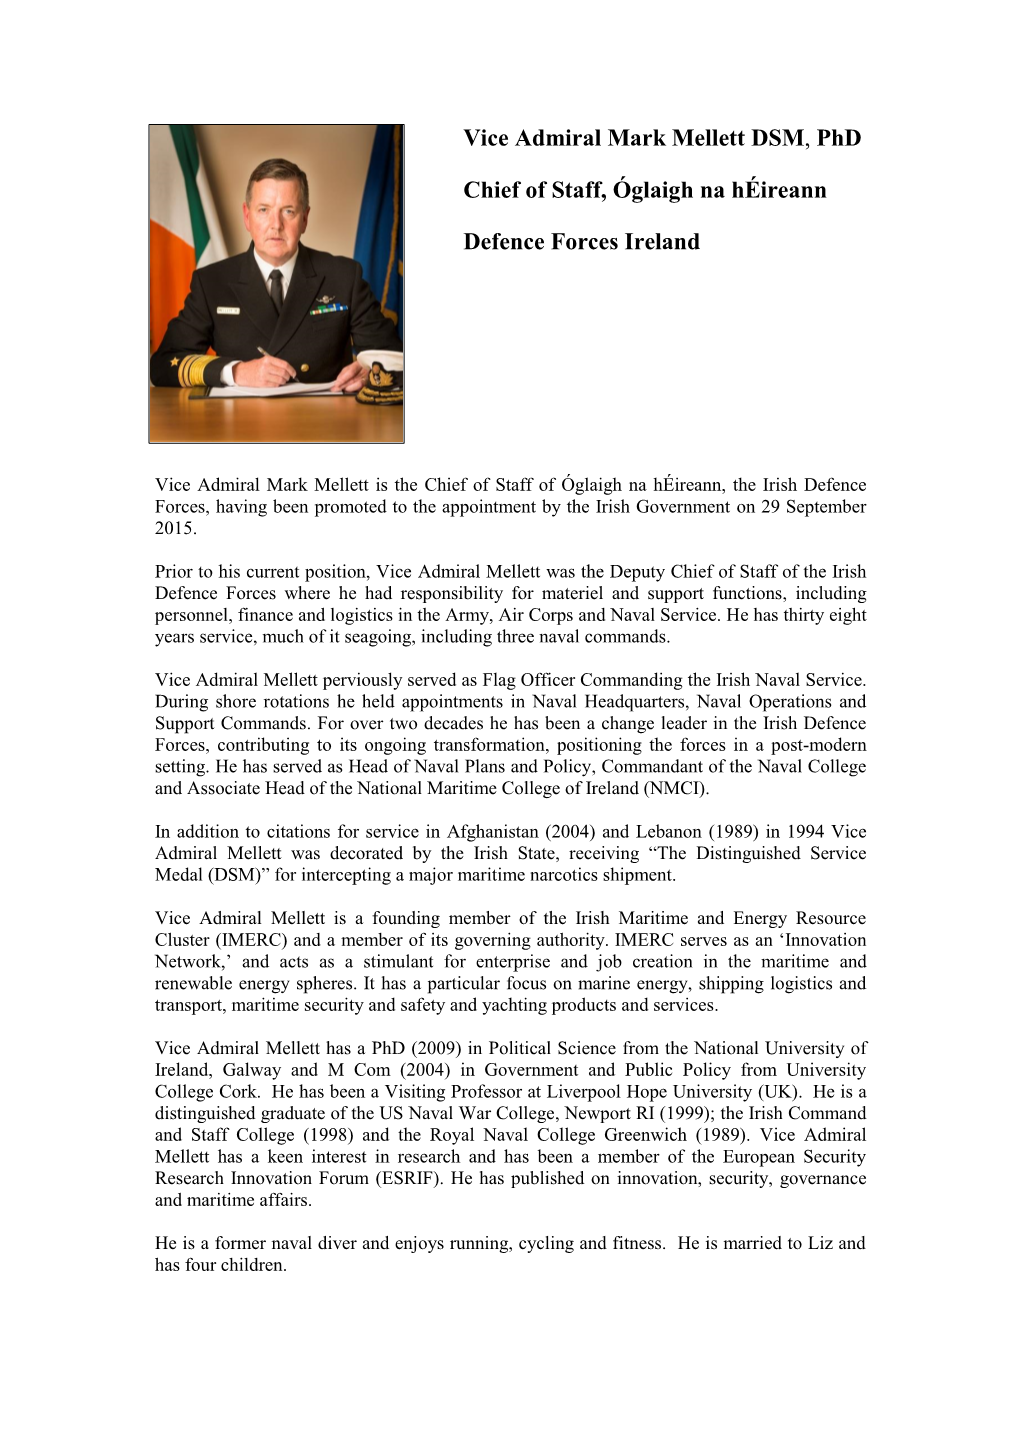 Vice Admiral Mark Mellett DSM, Phd Chief of Staff, Óglaigh Na Héireann Defence Forces Ireland